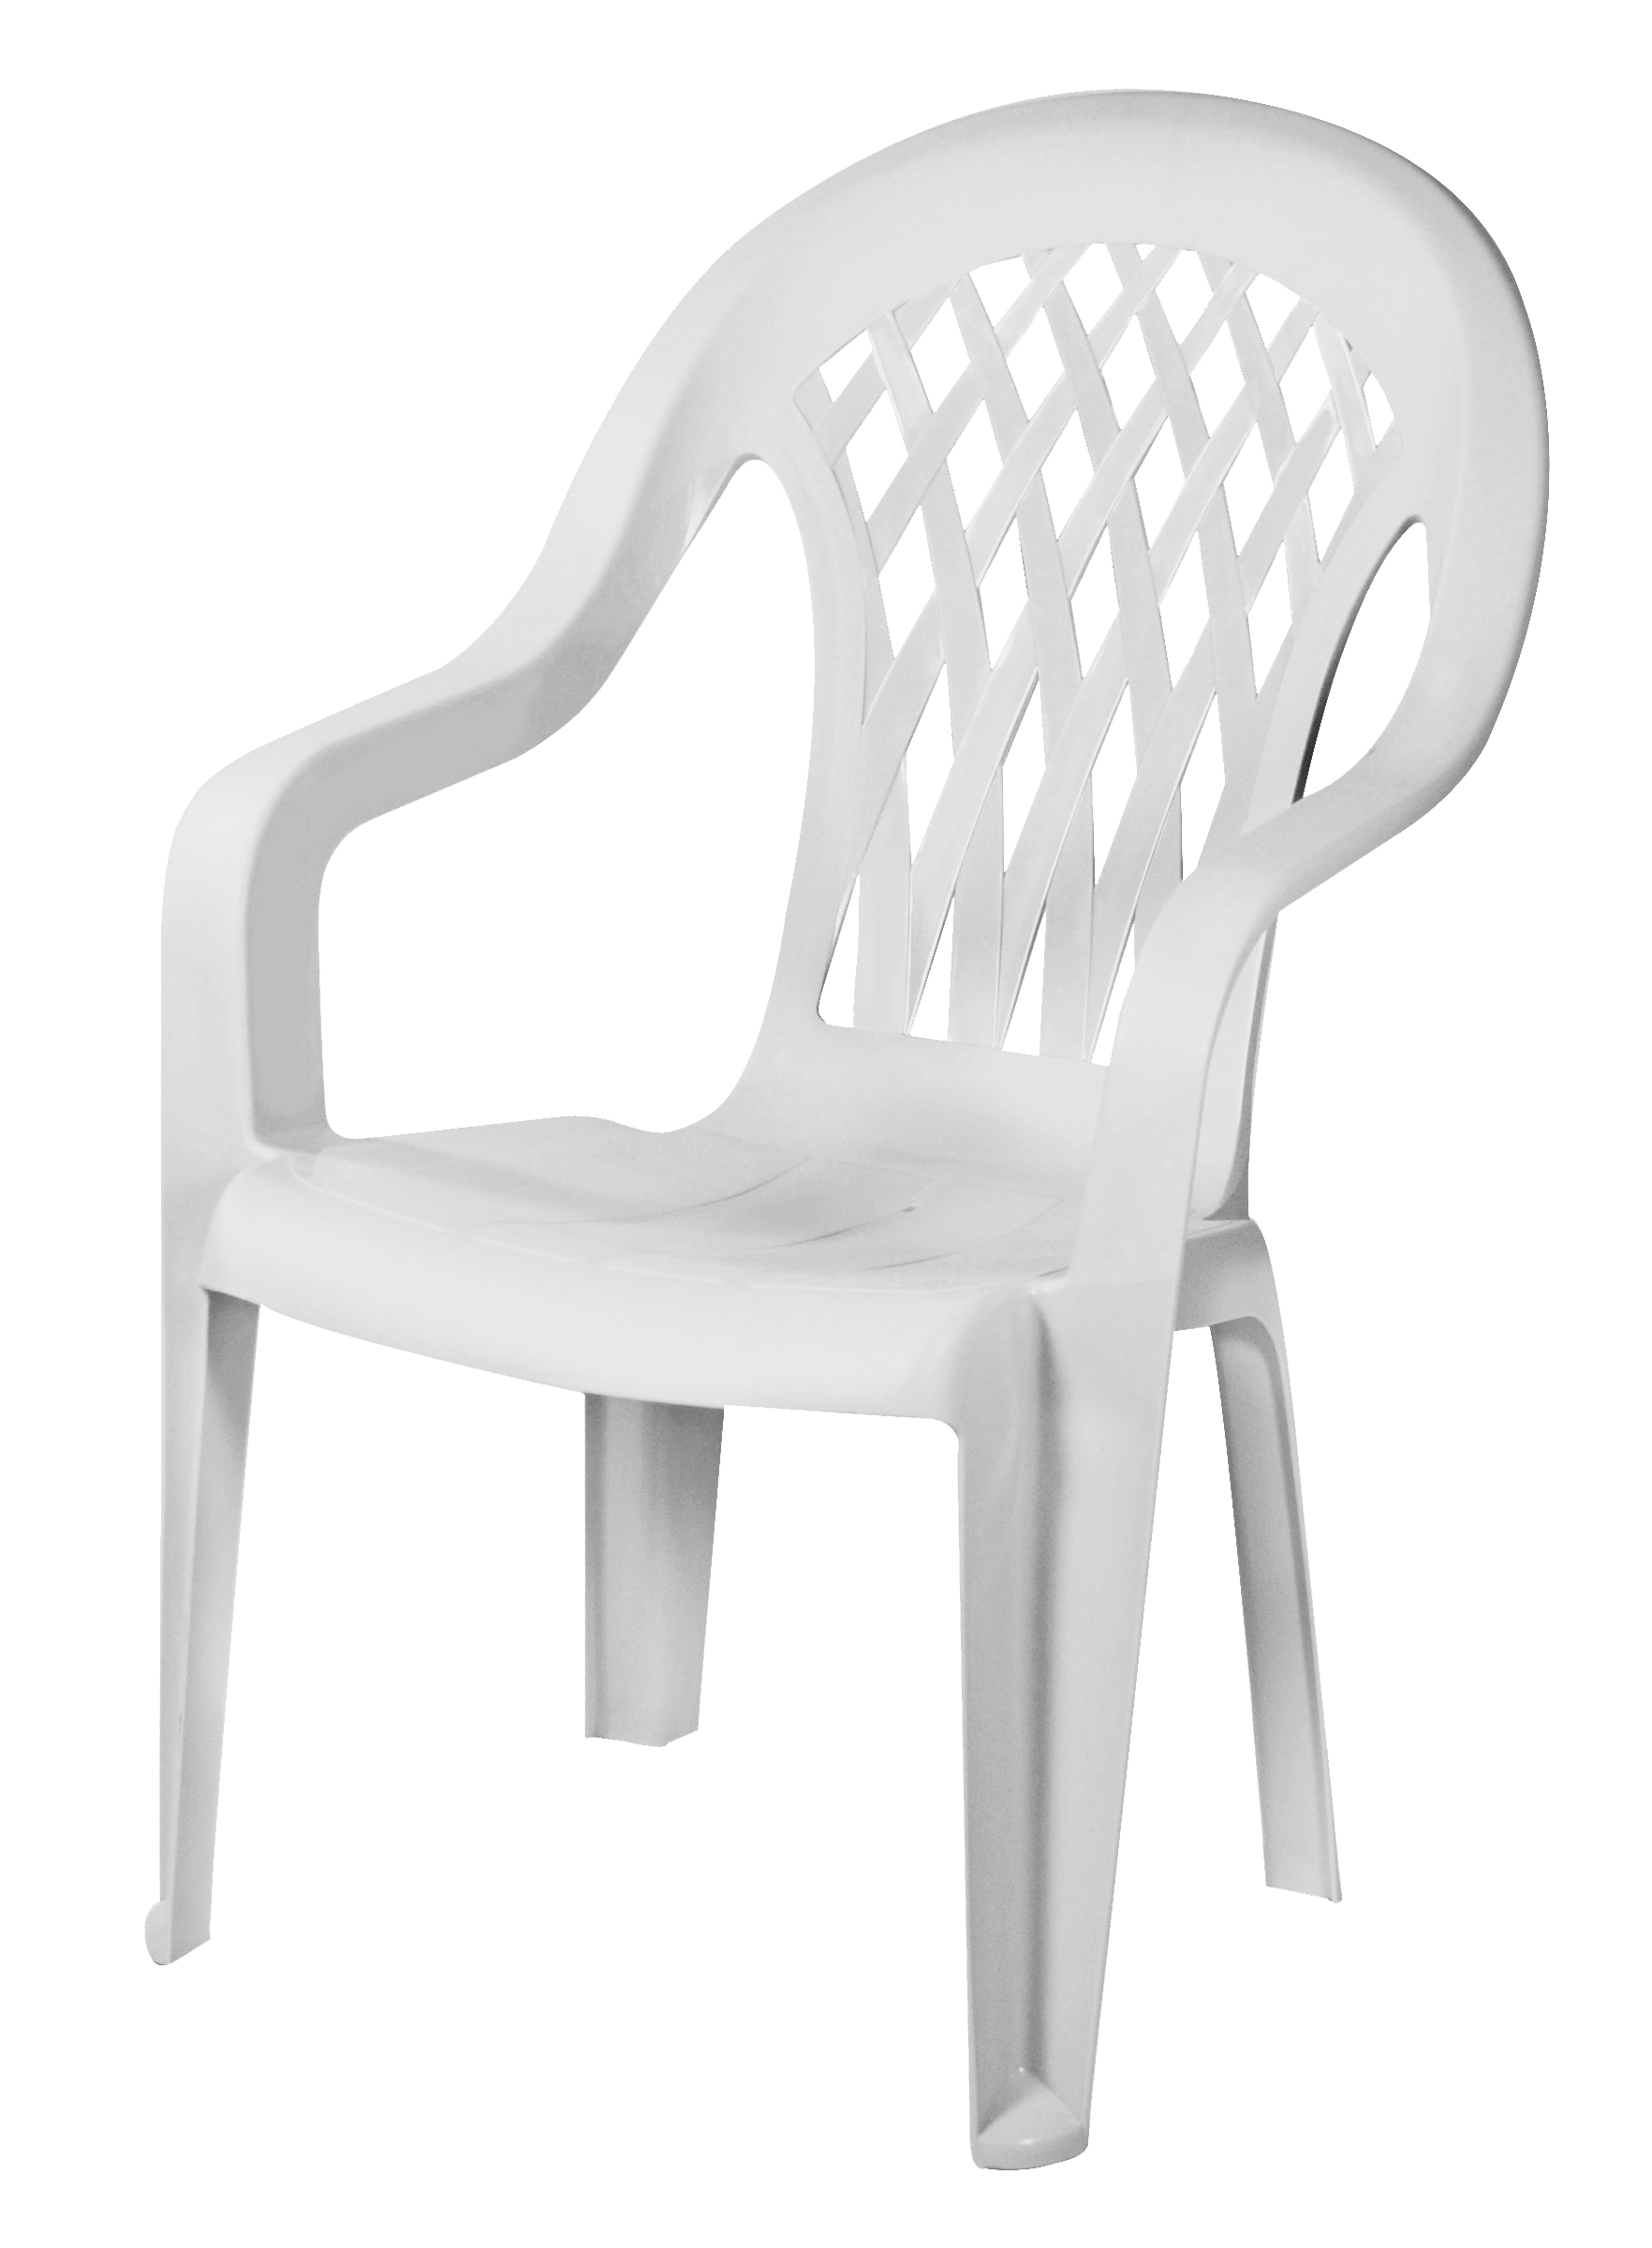 Adirondack Chair Plastic Adirondack Chairs Kmart Australia